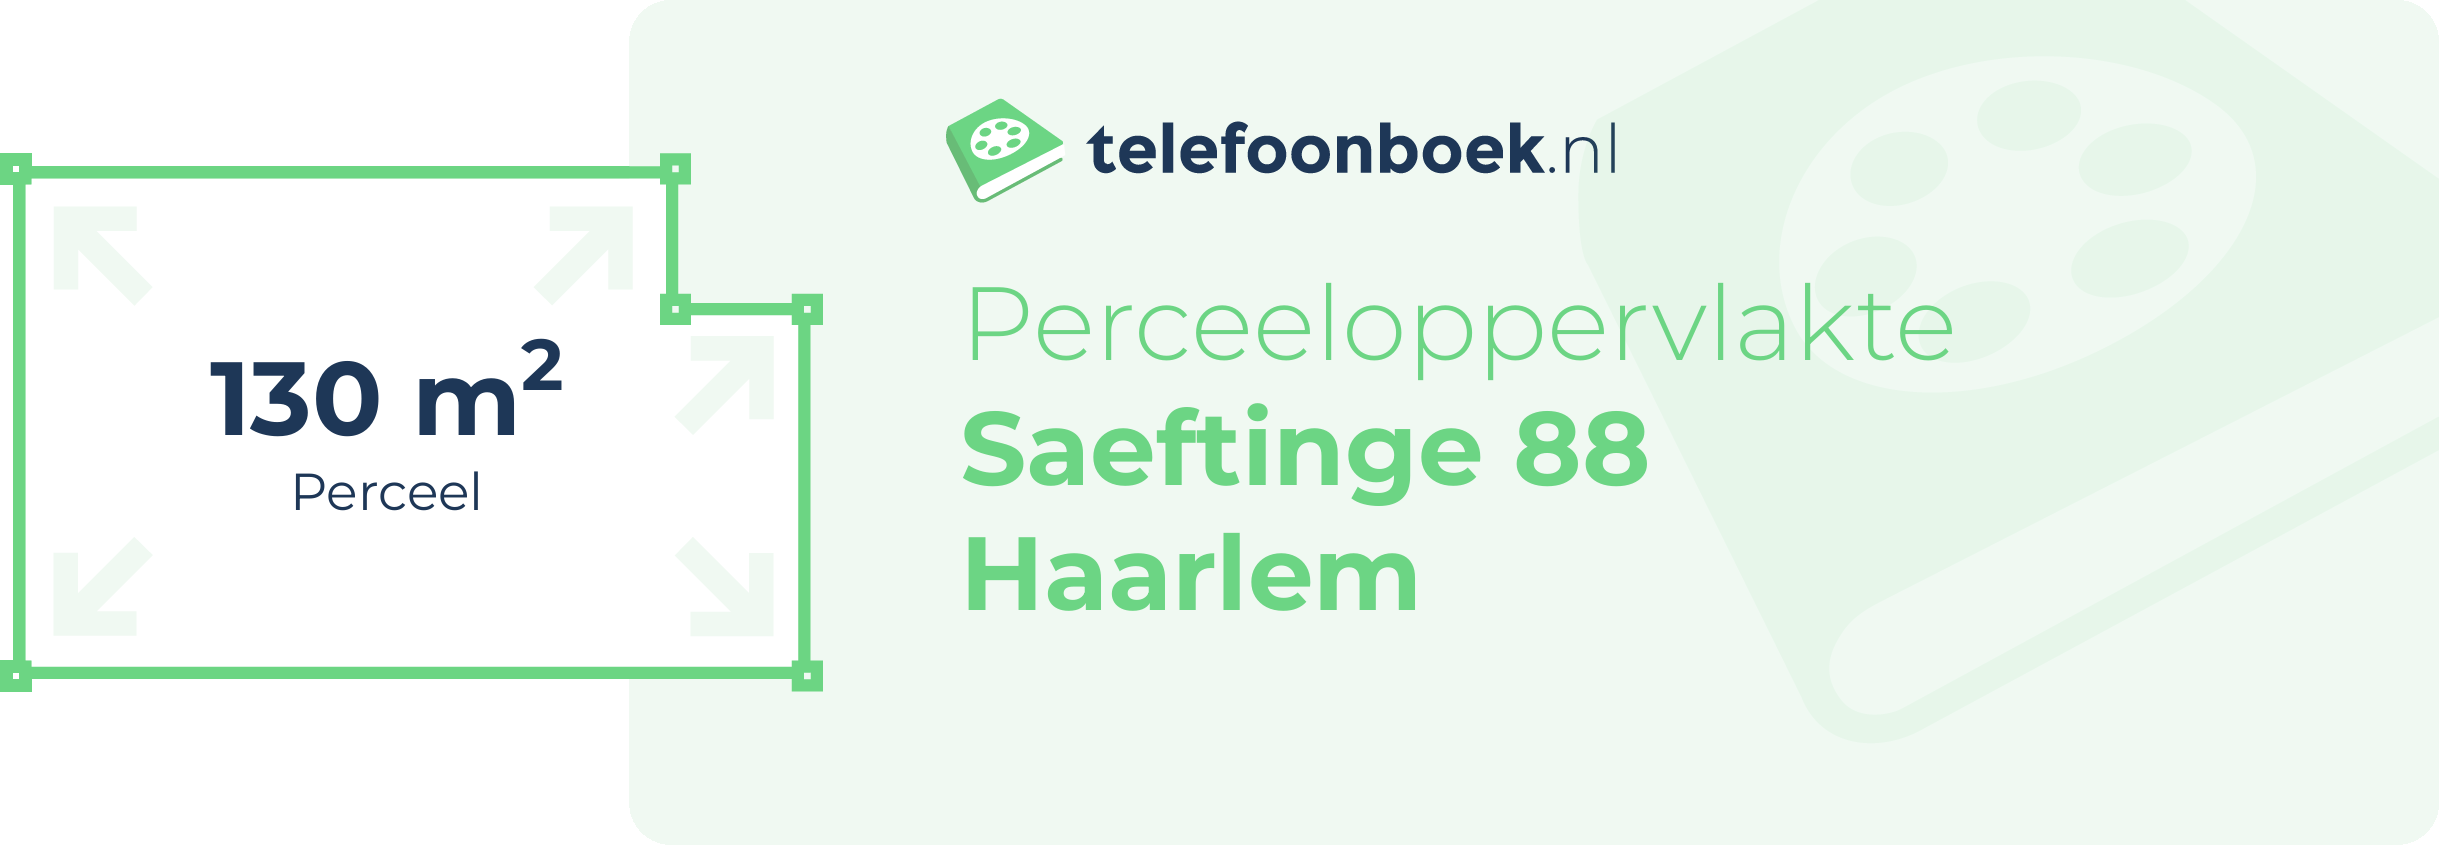 Perceeloppervlakte Saeftinge 88 Haarlem